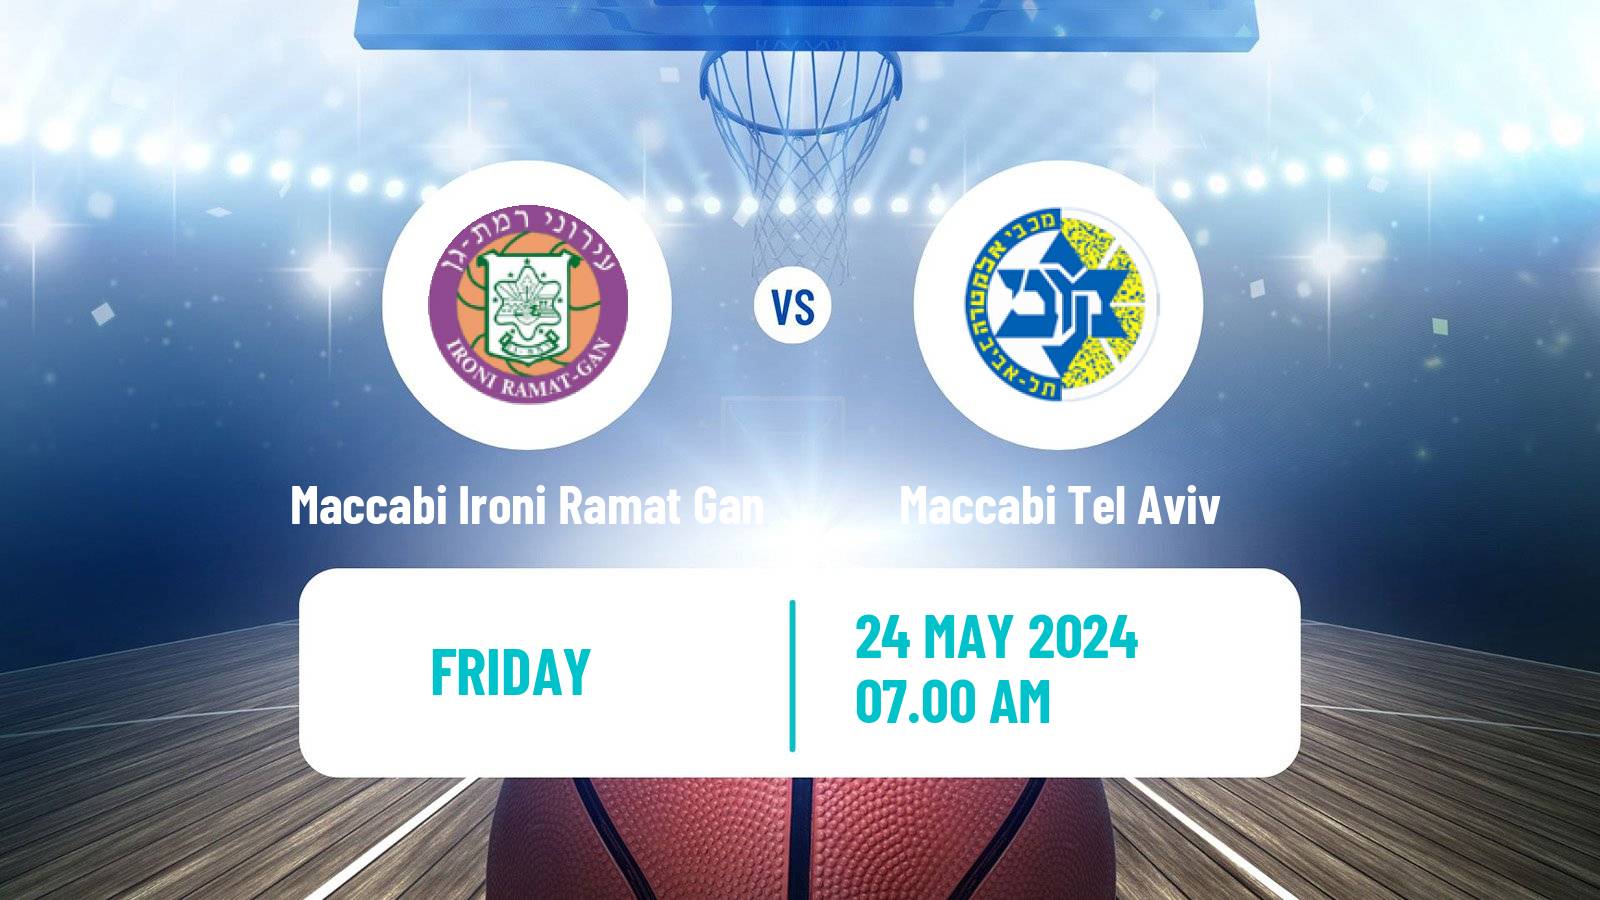 Basketball Israeli Basketball Super League Maccabi Ironi Ramat Gan - Maccabi Tel Aviv